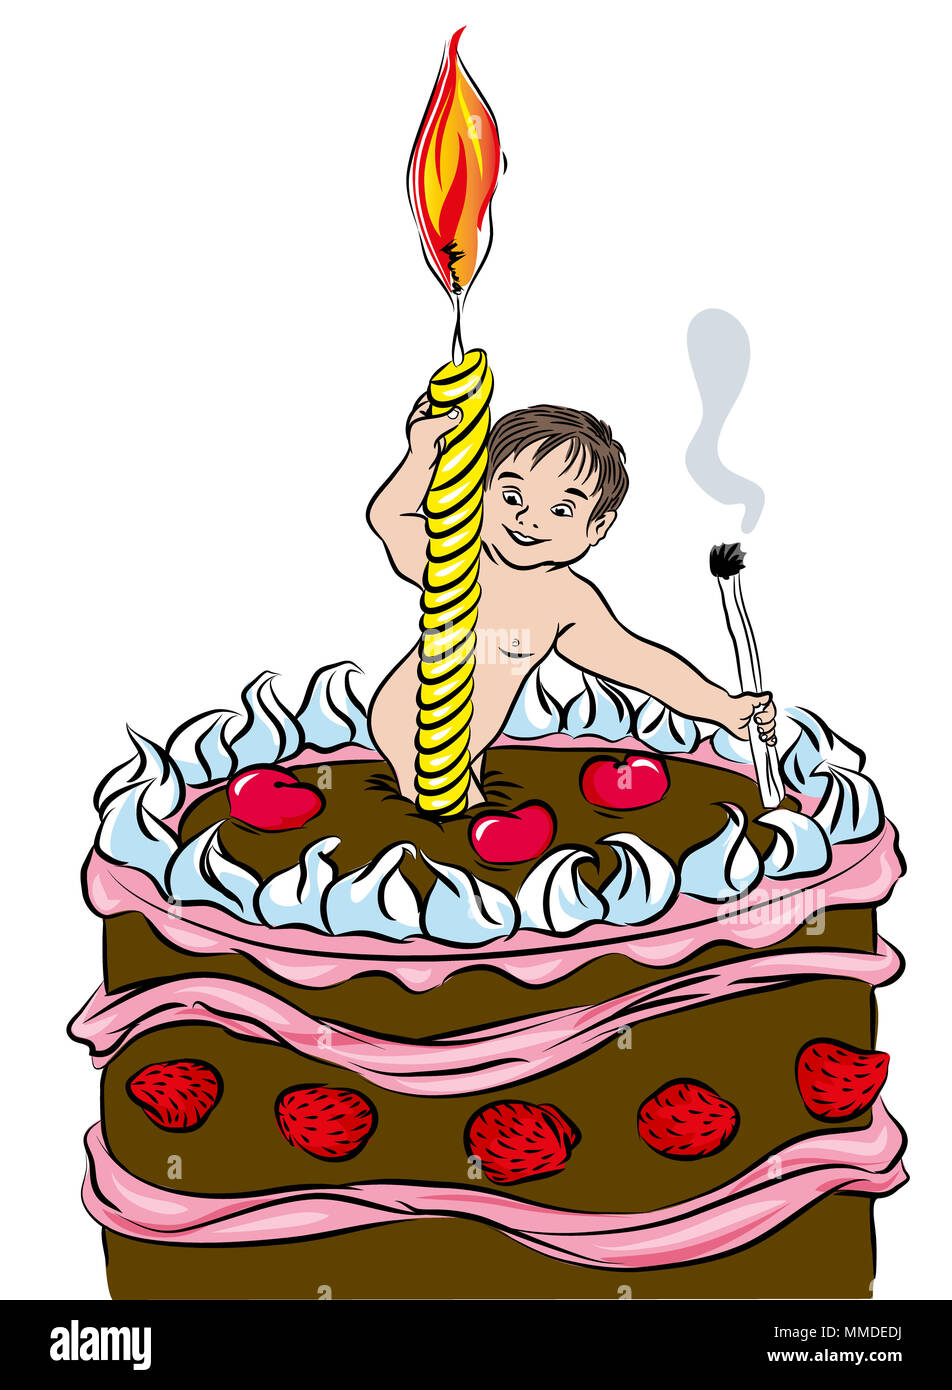 Caricature du 1er anniversaire de bébé avec gâteau